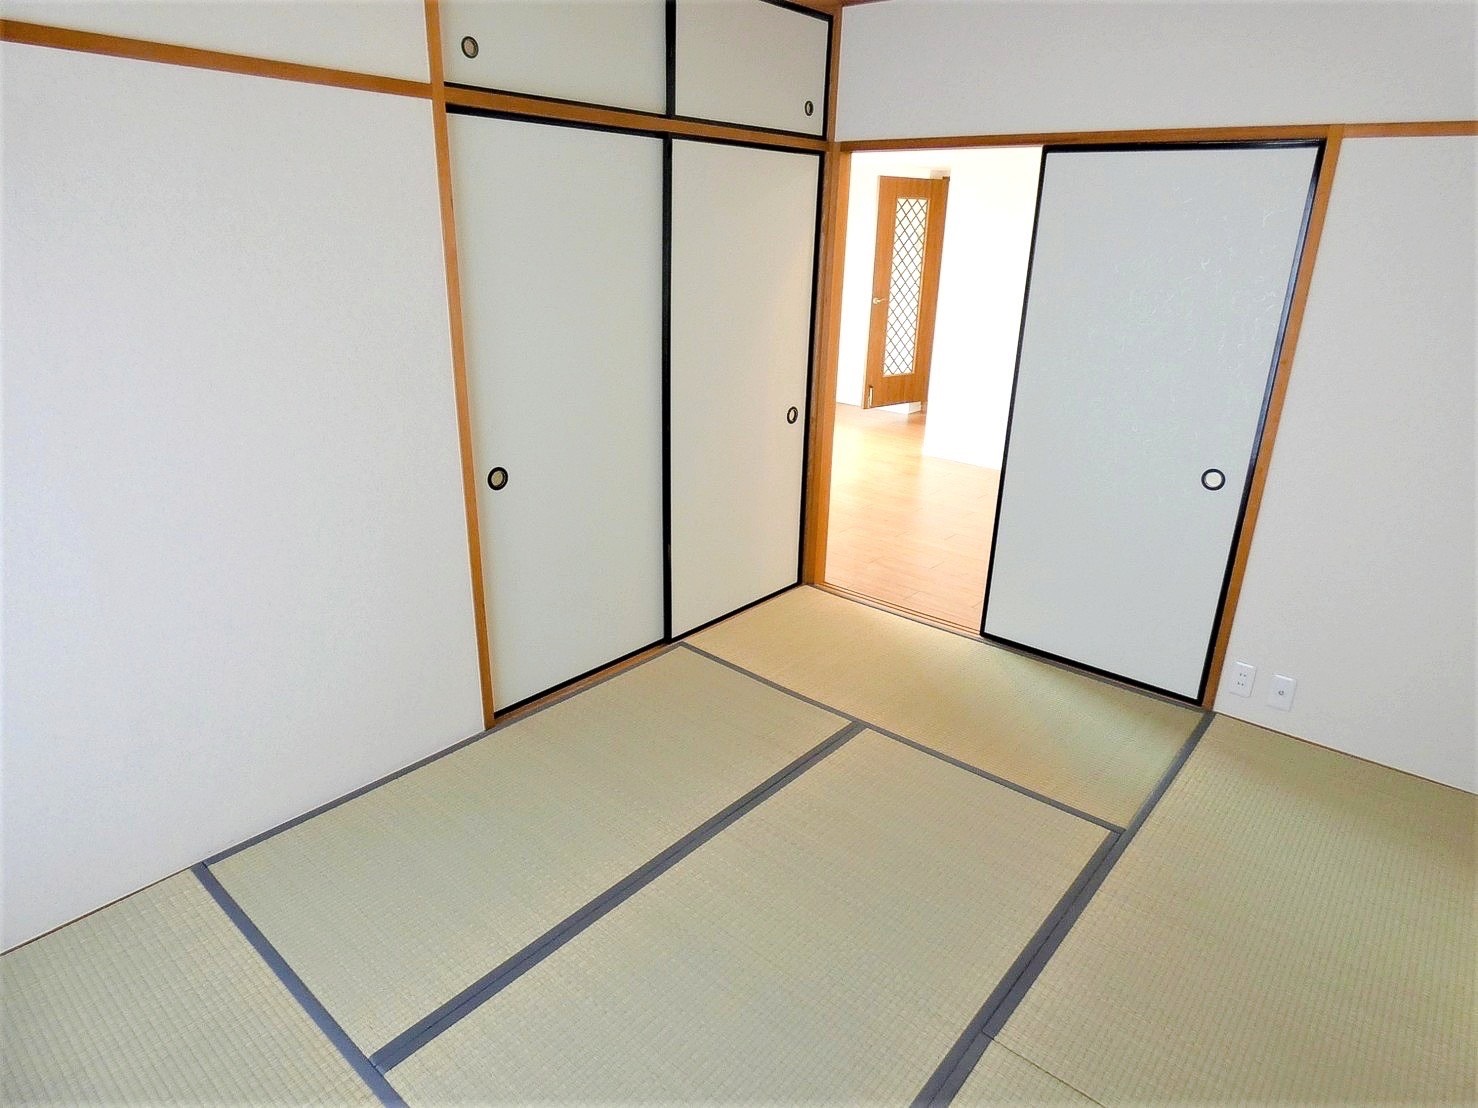 愛知県尾張旭市の中古マンションの施工事例です。 クロスの交換・和室の畳・襖の交換・水まわりの交換リフォーム工事|パートナーホーム